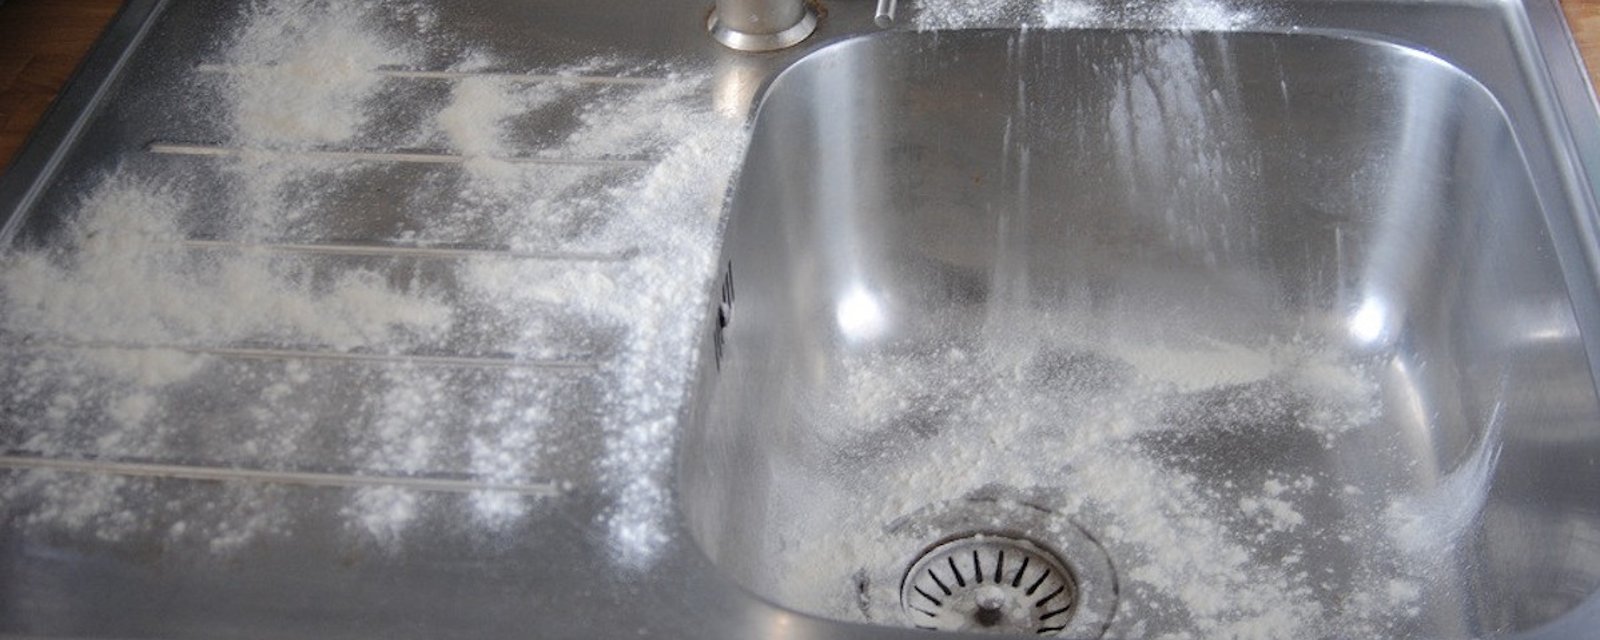 Que se passe-t-il lorsque vous saupoudrez de la farine dans un évier en inox?